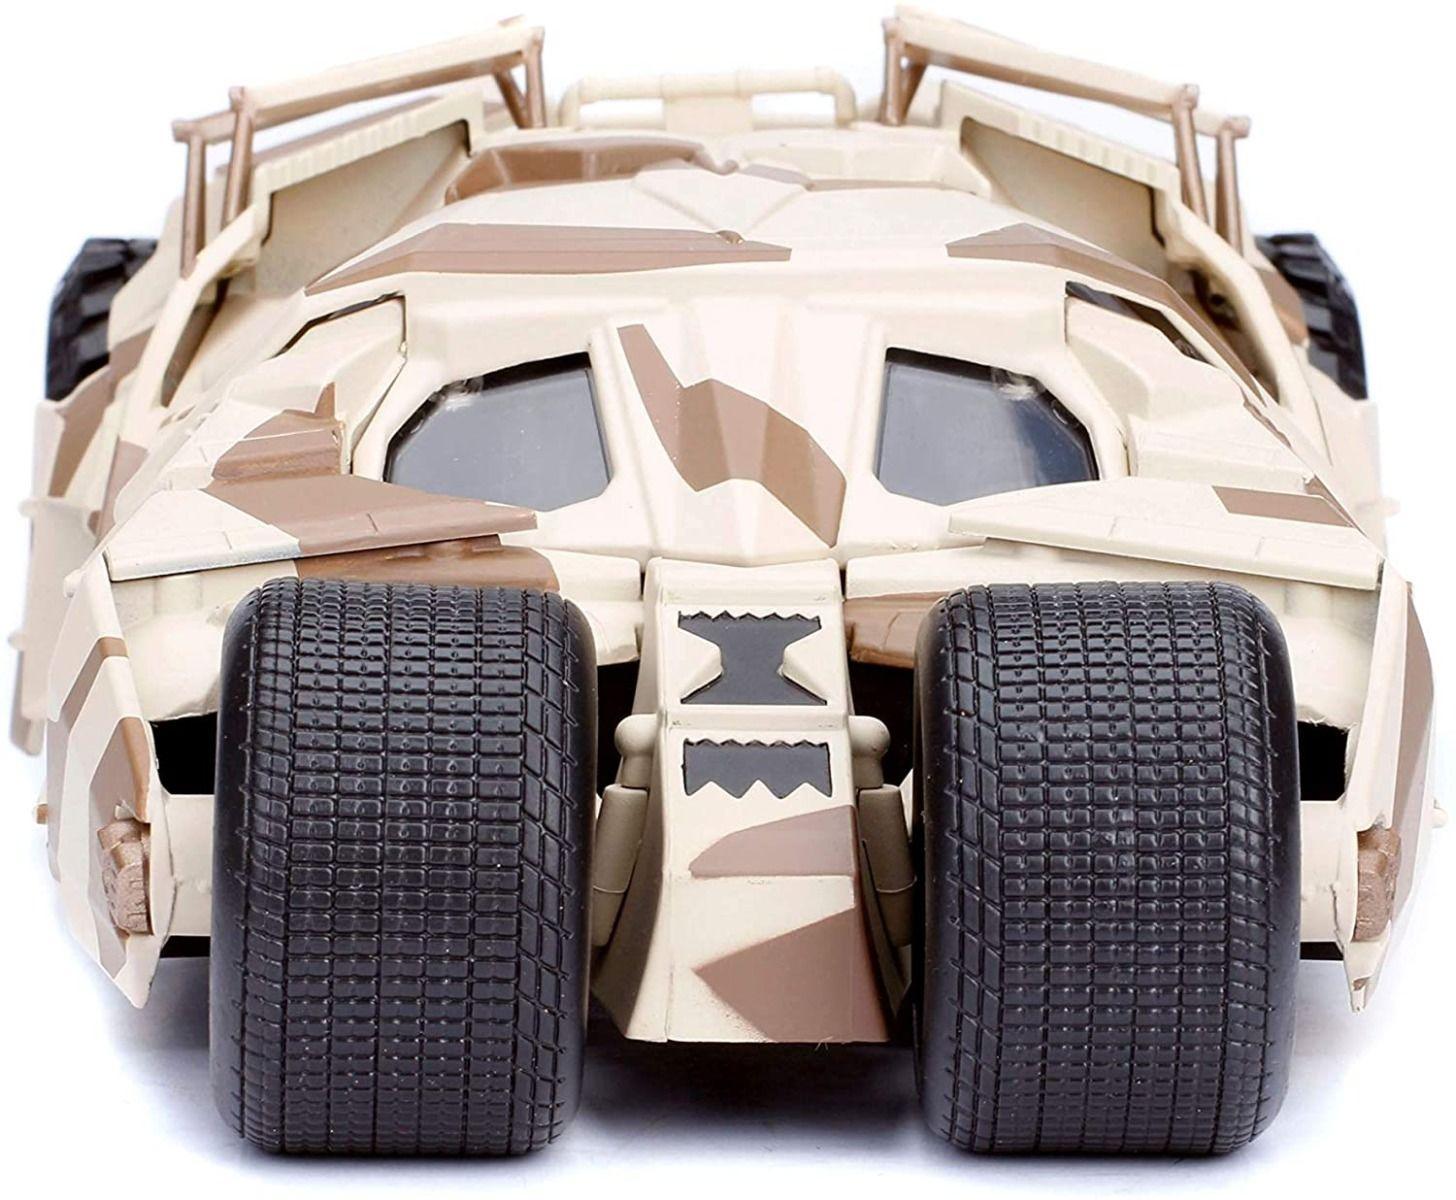 JAD98543 Batman - '08 TDK Batmobile Camo with Figure 1:24 Scale Hollywood Ride - Jada Toys - Titan Pop Culture